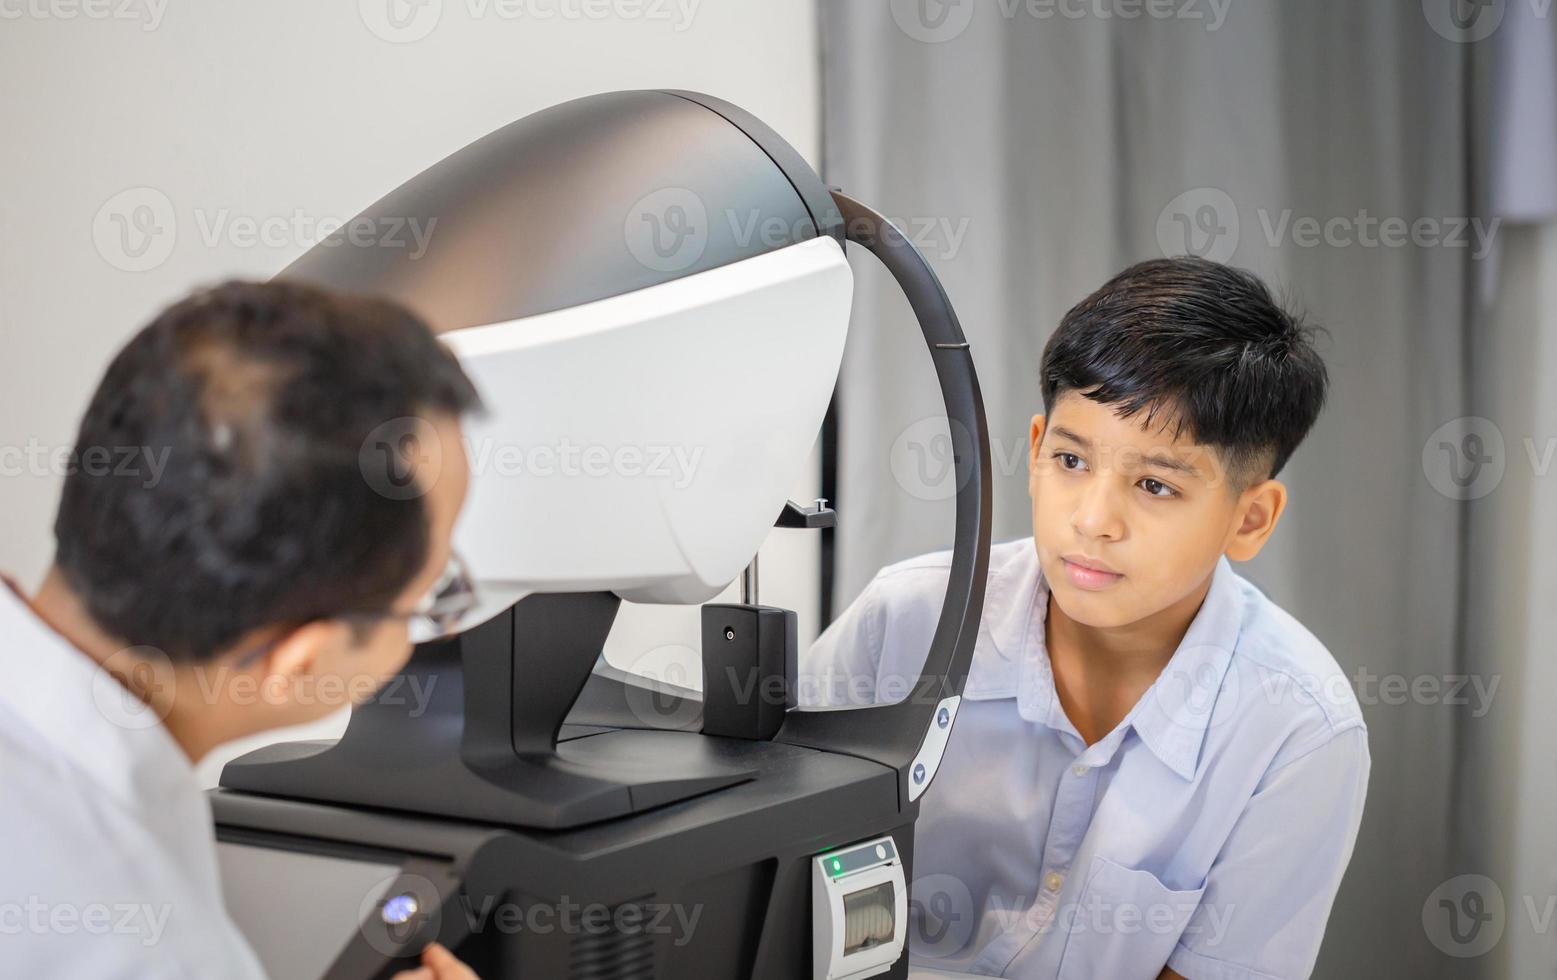 jongen die oogtest doet die onderzoek controleert met autorefractor in optische winkel, optometrist die gezichtstest doet voor kindpatiënt, oogarts die kindpatiënt onderzoekt foto